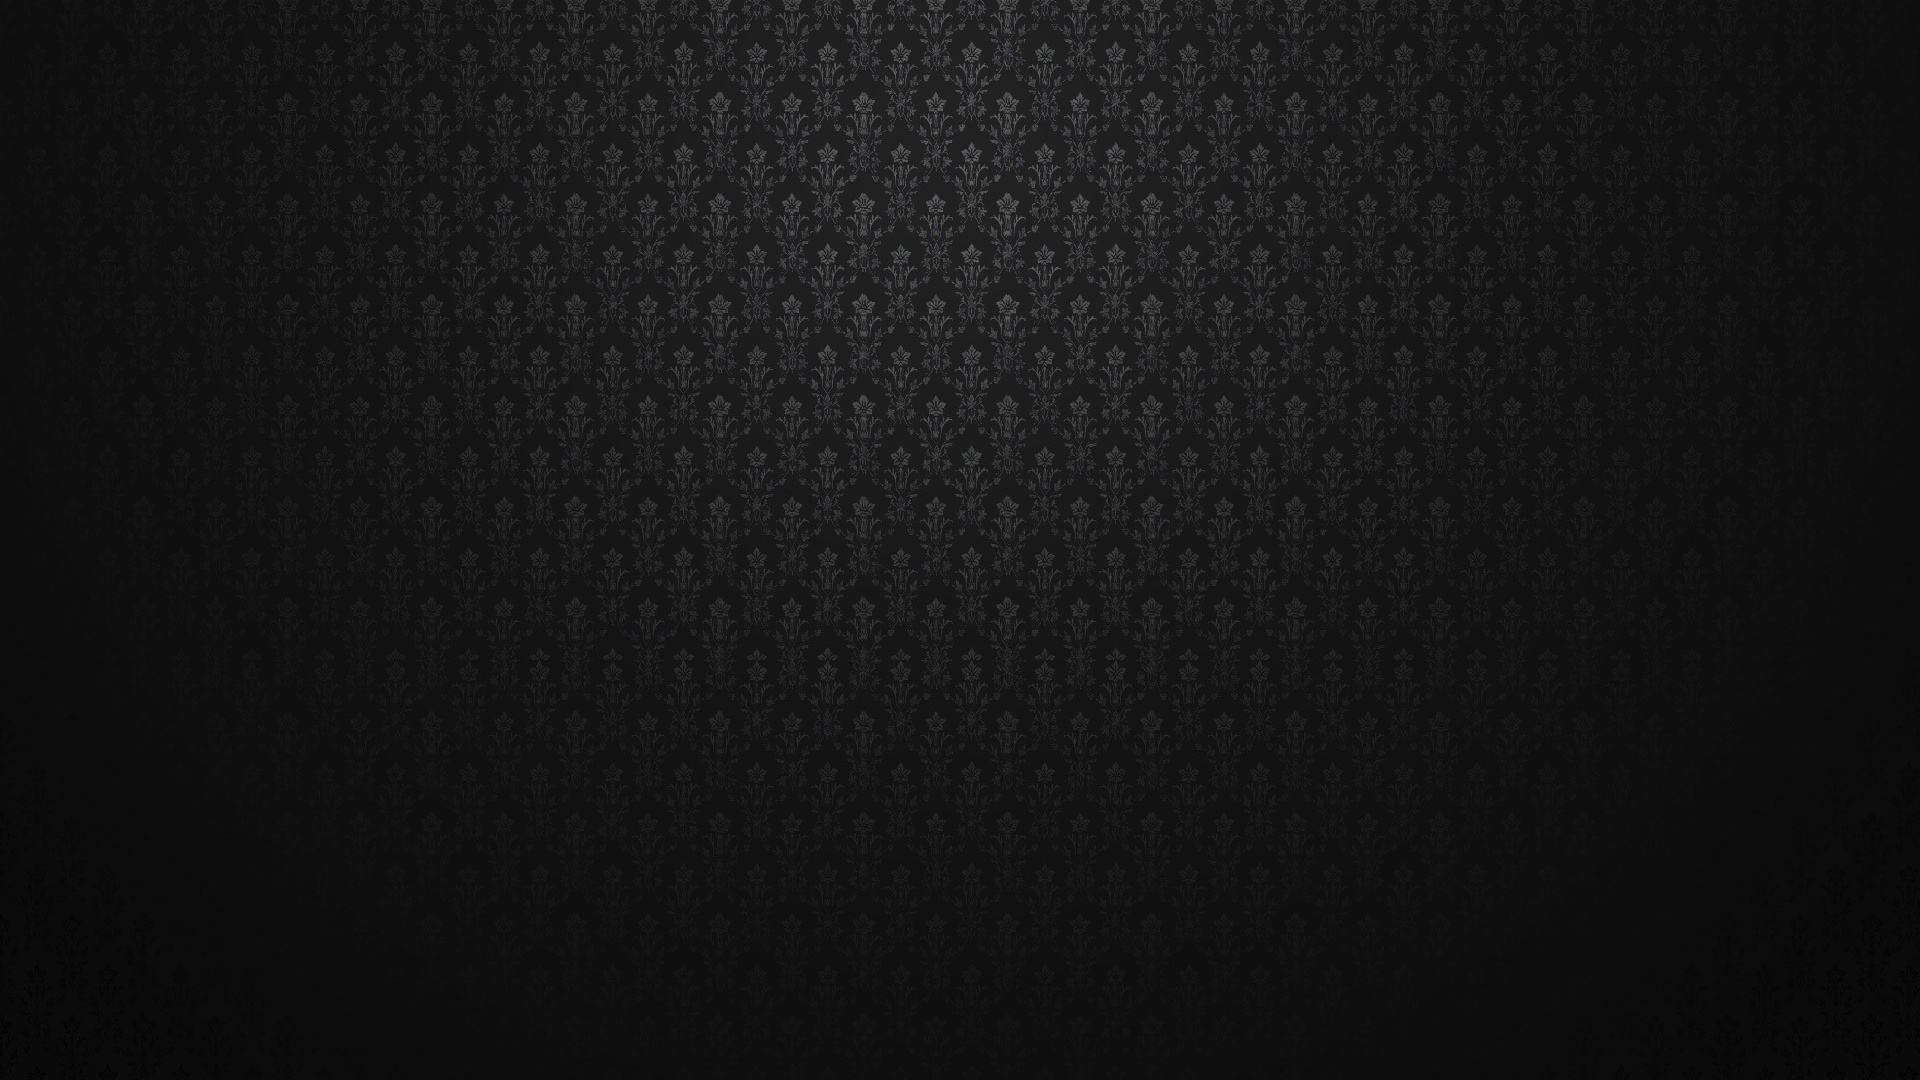 Black HD Wallpaper 1920x1080 - WallpaperSafari